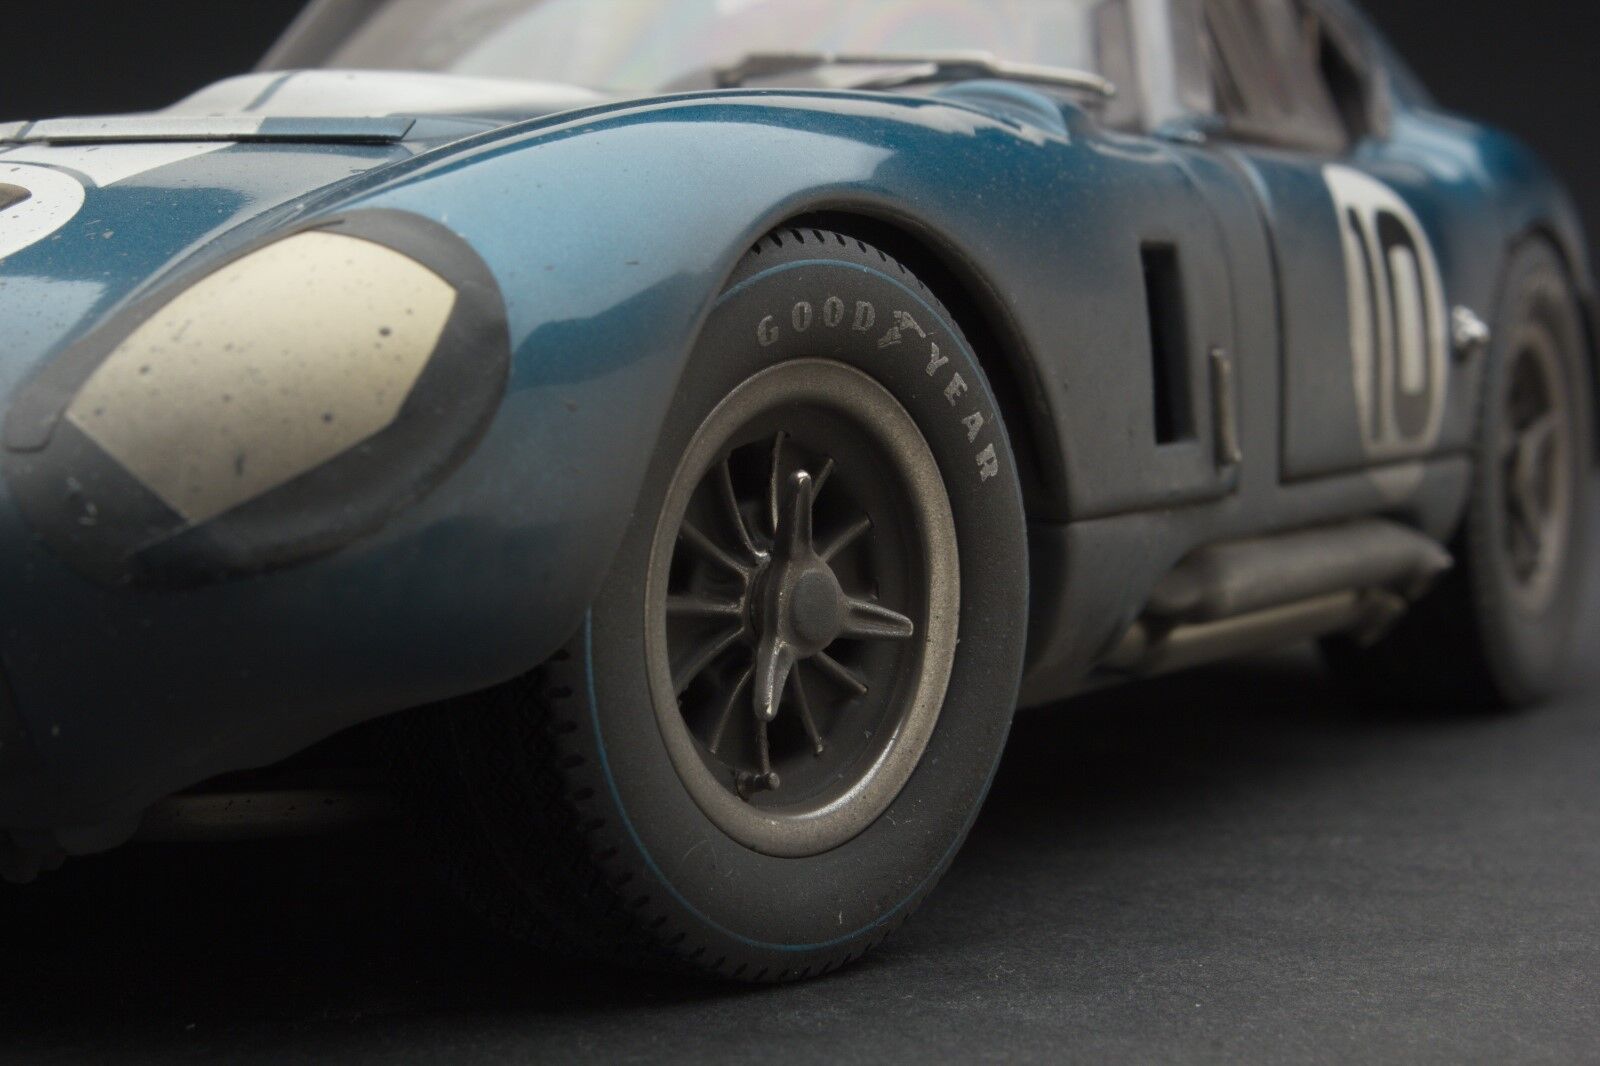 RACE WEATHERED | Exoto 1965 Cobra Daytona at Le Mans | 1:18 | #RLG18010BFLP